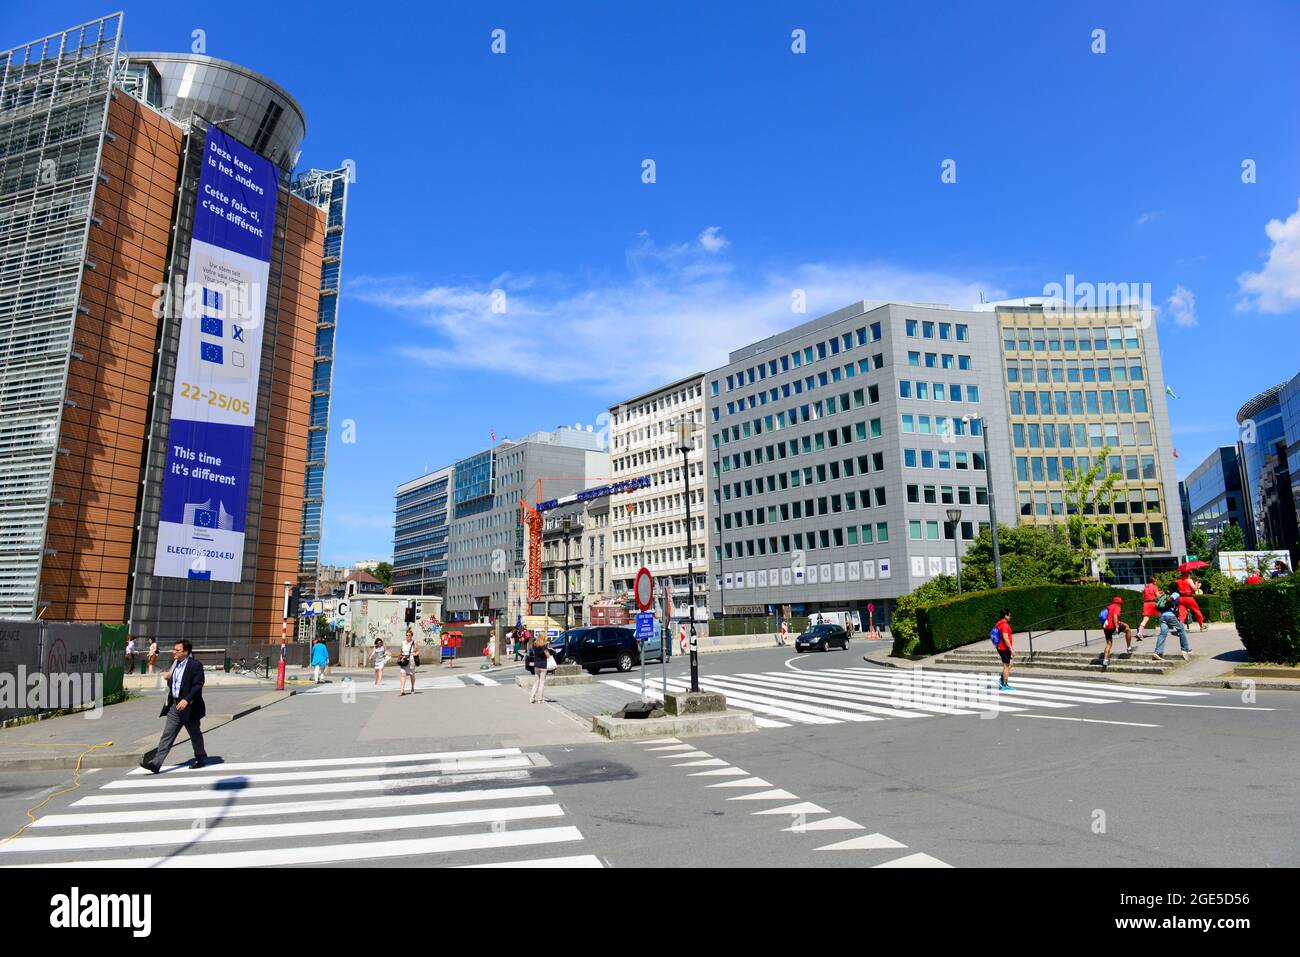 El edificio Berlaymont - Sede de la Comisión Europea, CE, el ejecutivo de la Unión Europea, UE. Bruselas, Bélgica. Foto de stock